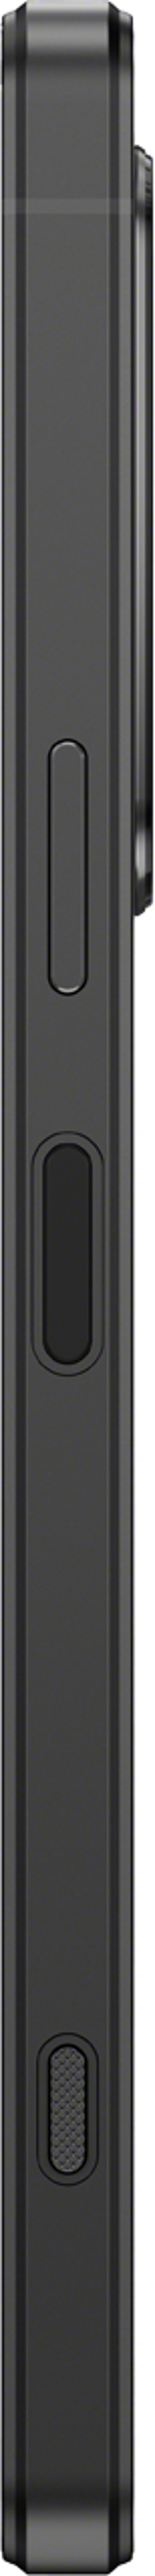 Sony XPERIA 1 IV 256GB Dual-SIM Sort